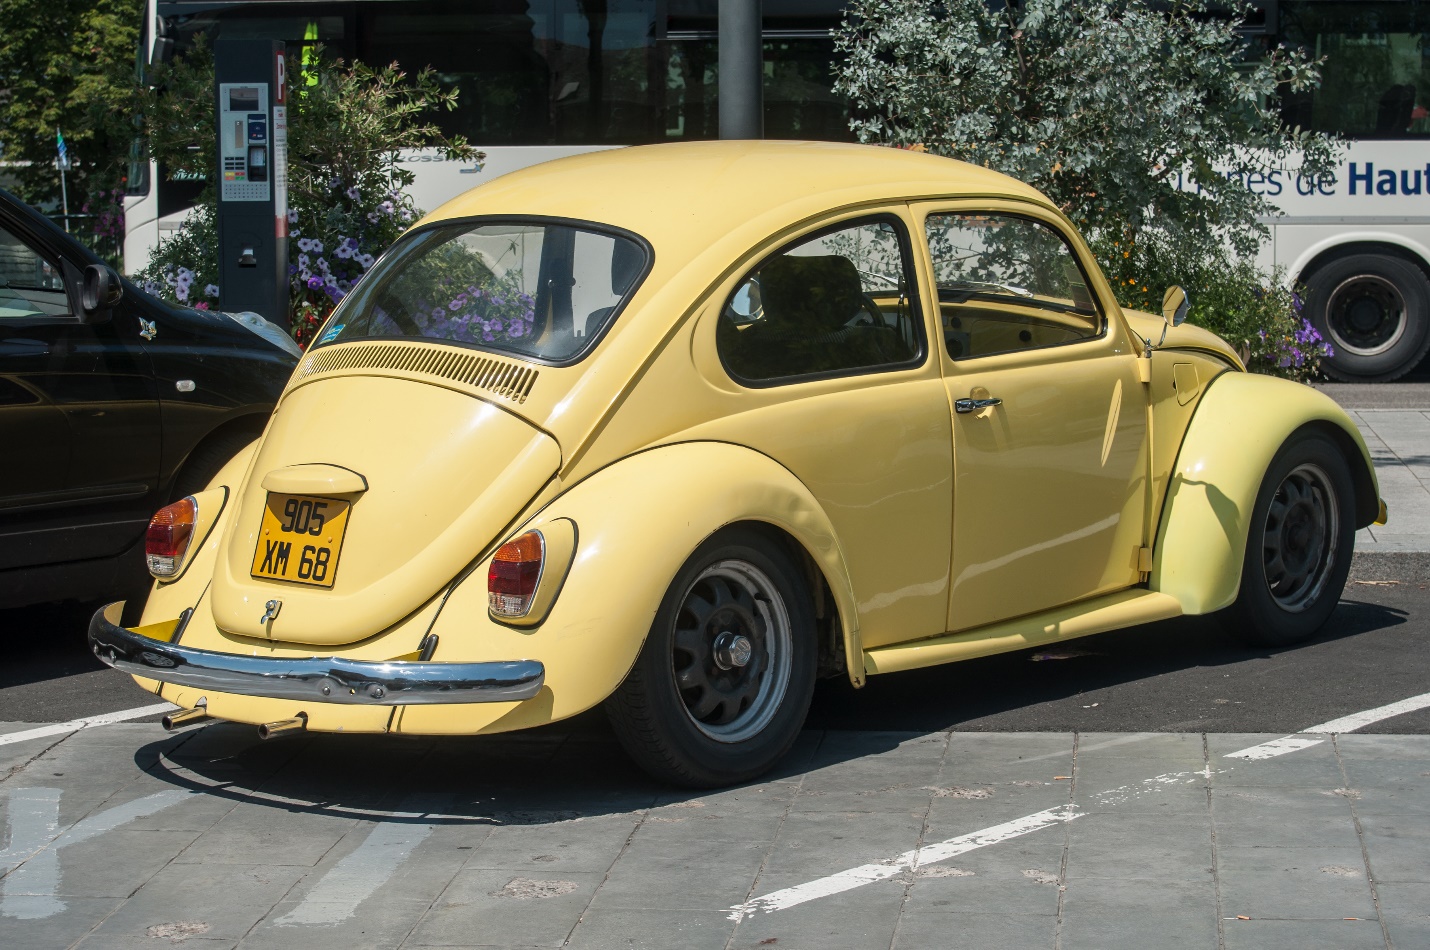 https://www.gojeffvw.com/blogs/3024/wp-content/uploads/2019/12/old-volkswagen-yellow-beetle.jpg